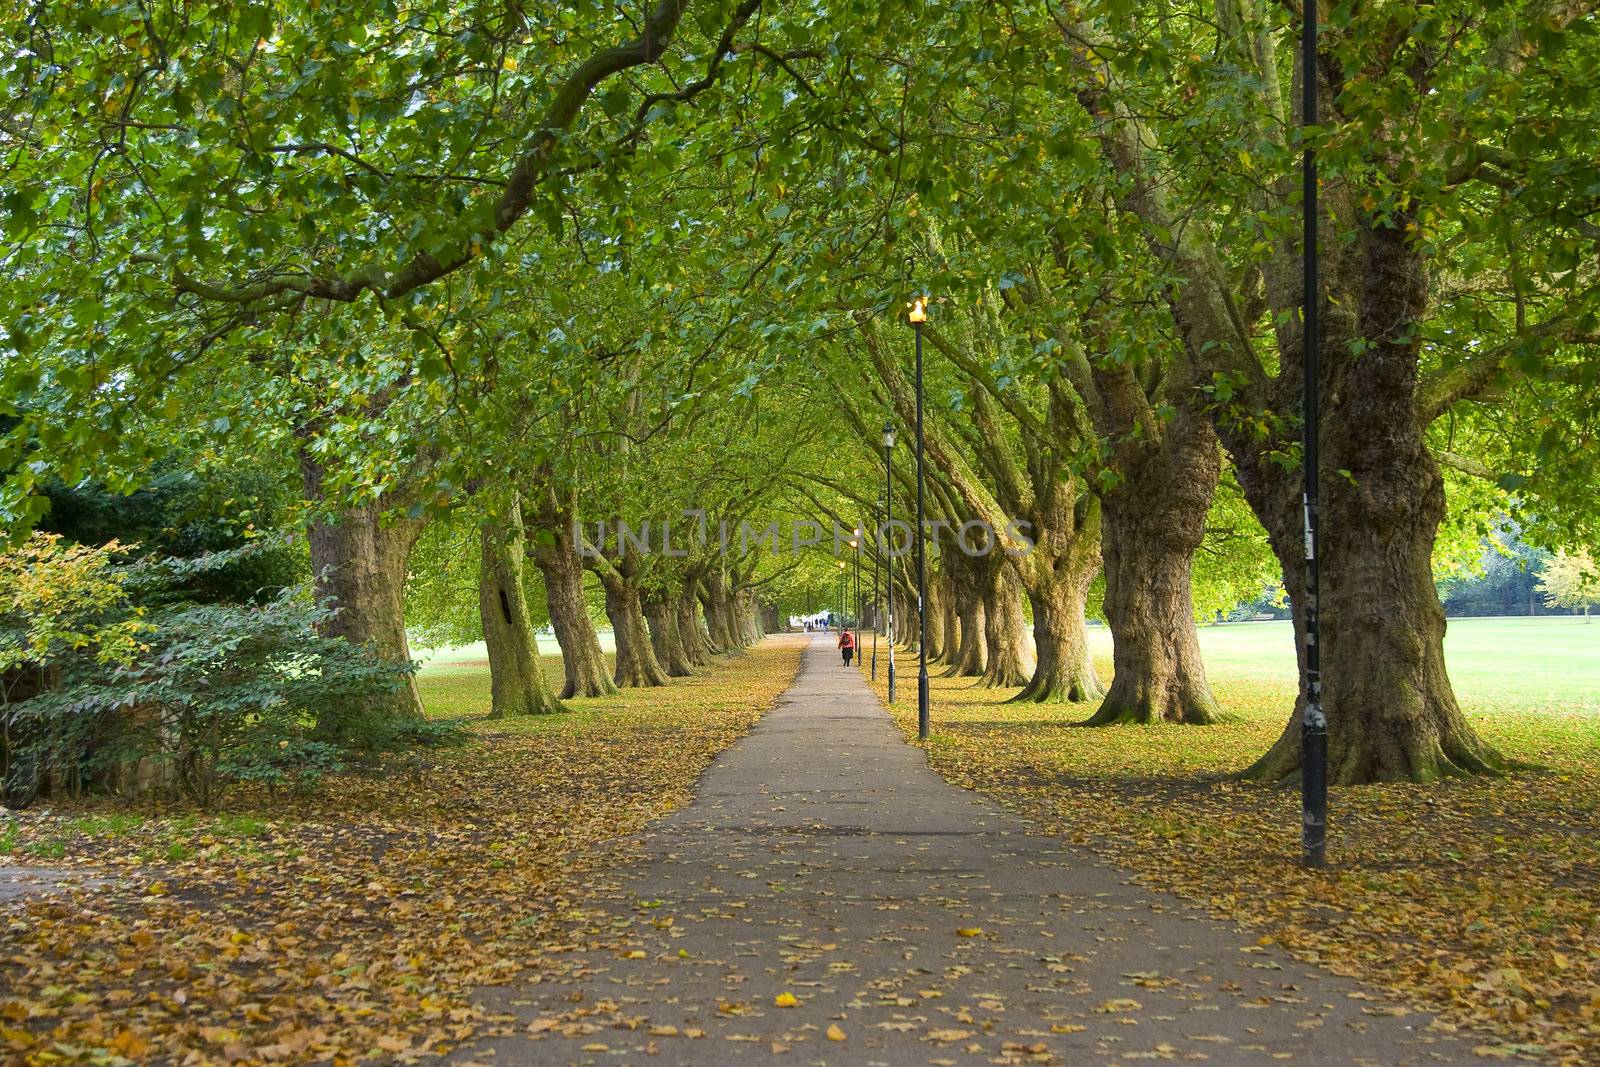 Park Scene from Cambridge, UK by enderbirer